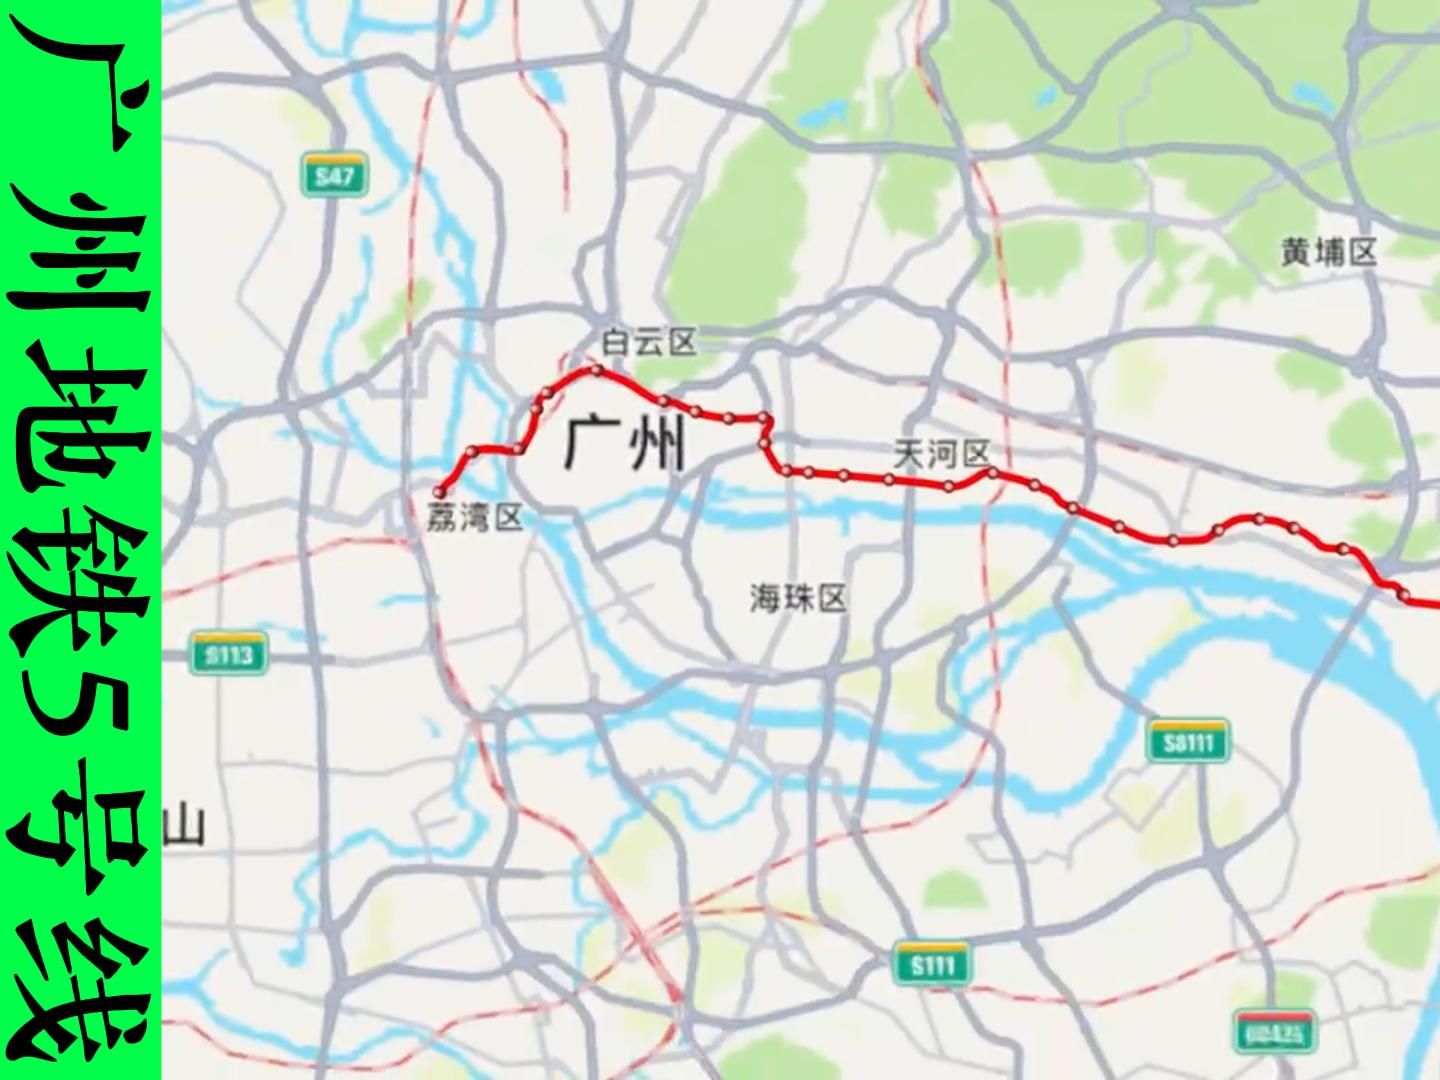 广州地铁线路图5号线图片